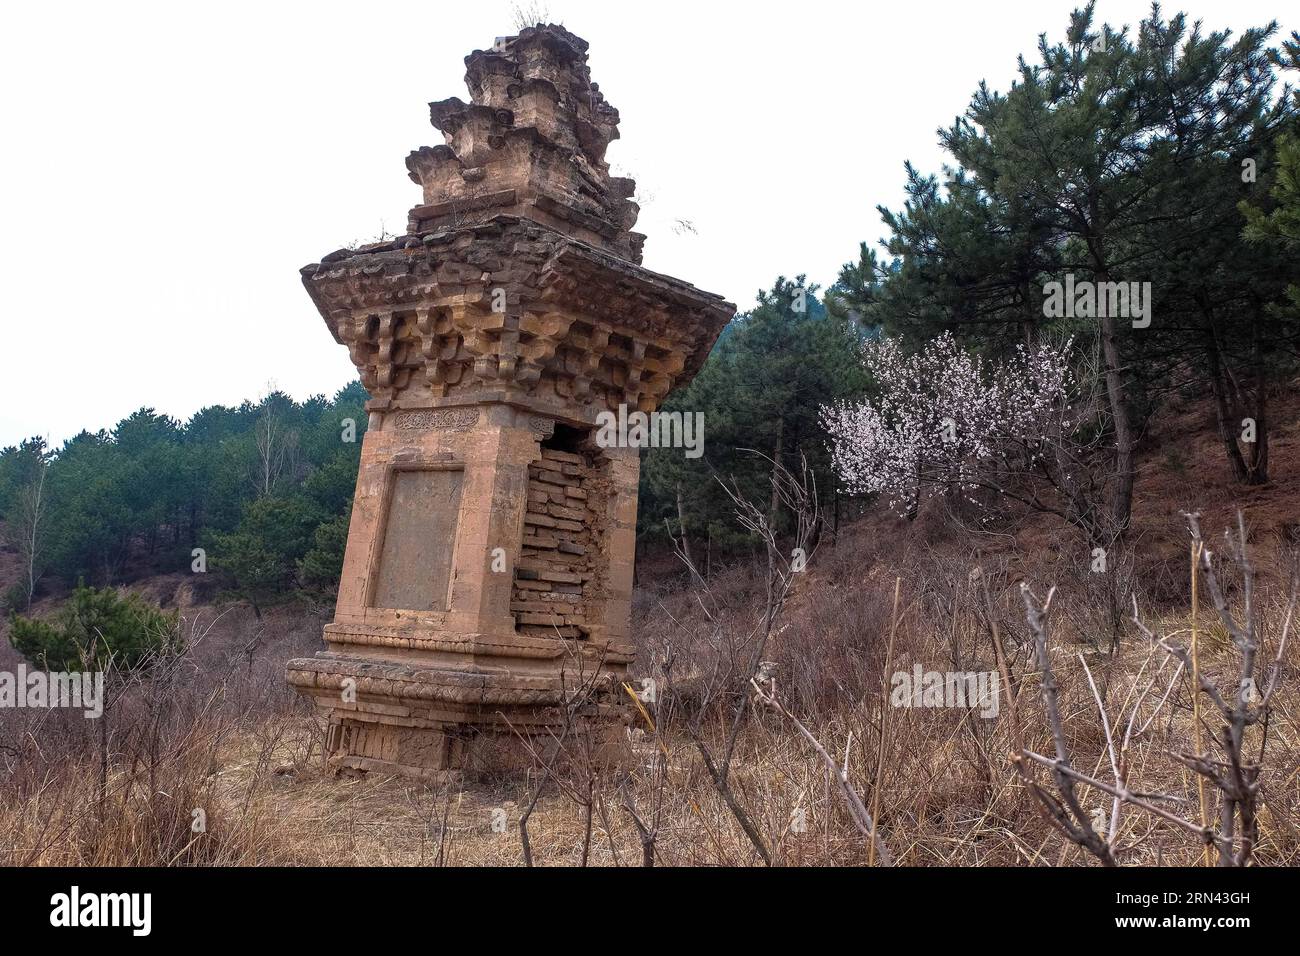 (150505) -- TAIYUAN, 5. Mai 2015 -- Foto aufgenommen am 8. April 2015 zeigt einen alten Backsteinturm am Foguang-Tempel, eingebettet in Mount Wutai, einem heiligen buddhistischen Berg in der nordchinesischen Provinz Shanxi. Die Ost-Haupthalle des Foguang-Tempels, ein Gebäude, das 857 während der Tang-Dynastie (618-917) erbaut wurde, ist eines der ältesten Holzgebäude in China. (wf) CHINA-SHANXI-ANTIKE GEBÄUDE-FOGUANG TEMPEL (CN) FanxMinda PUBLICATIONxNOTxINxCHN Taiyuan 5. Mai 2015 Foto aufgenommen AM 8. April 2015 zeigt den alten Ziegelturm AM Tempel in Mount Wutai, einem heiligen buddhistischen Berg in Nordchina Stockfoto